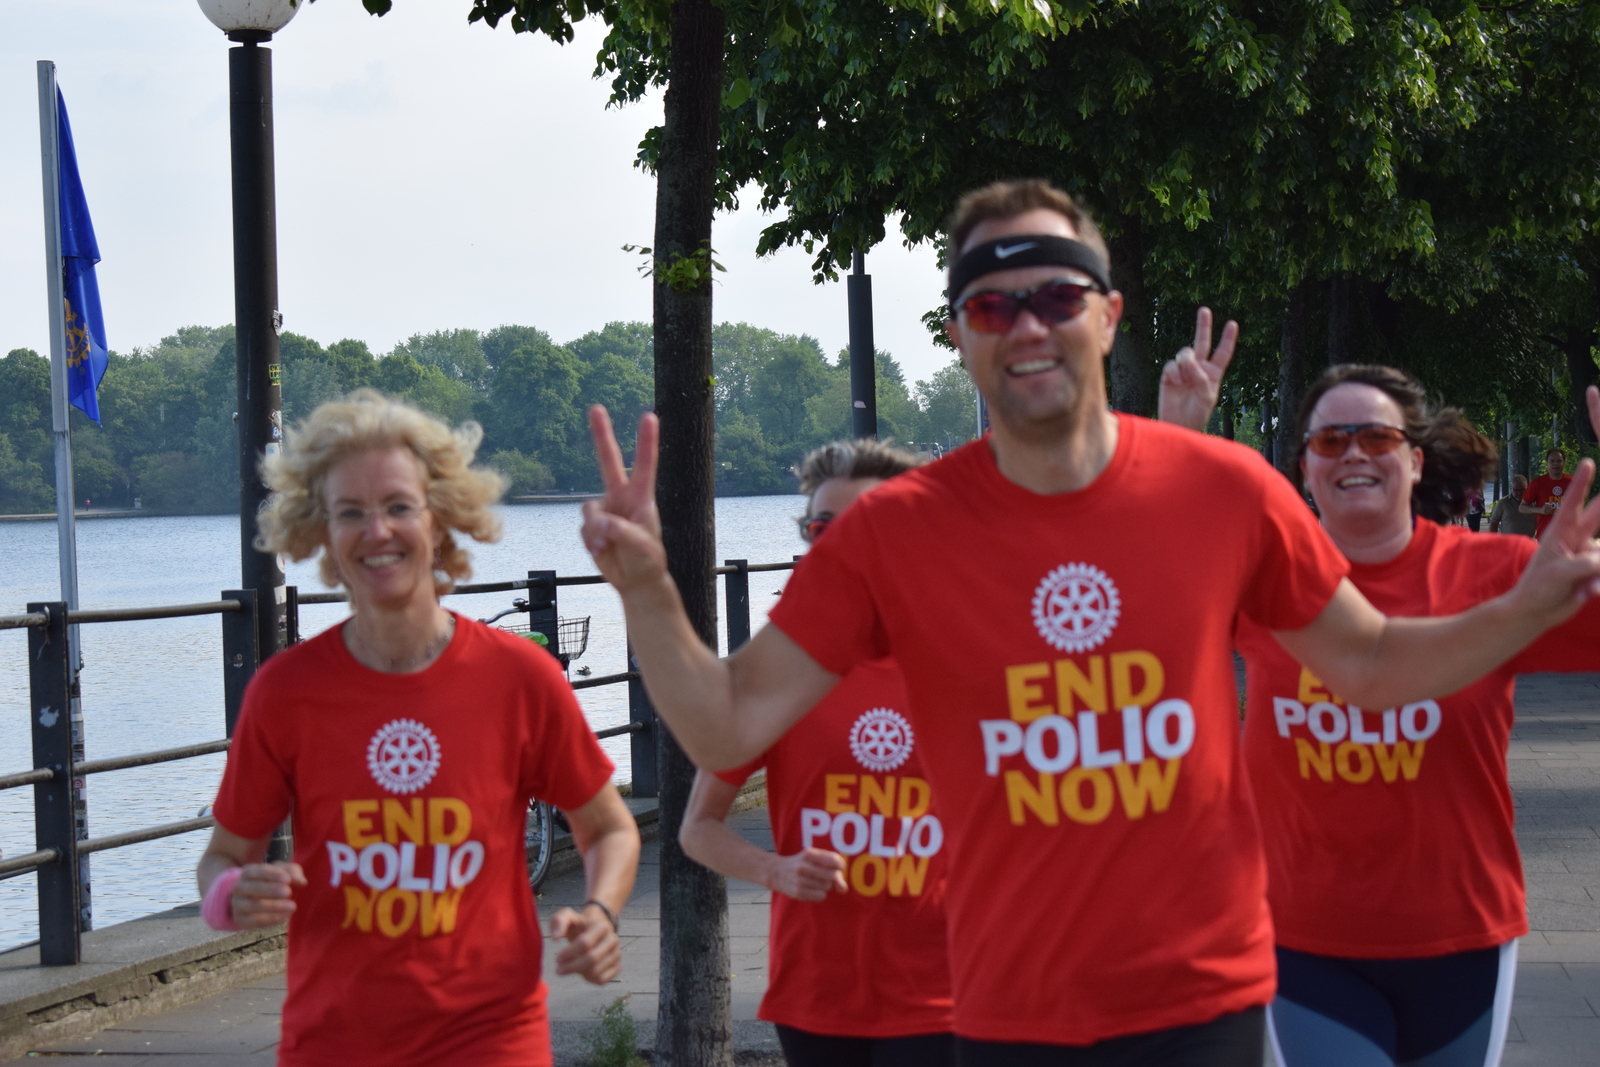 2019, convention hamburg, end polio, run